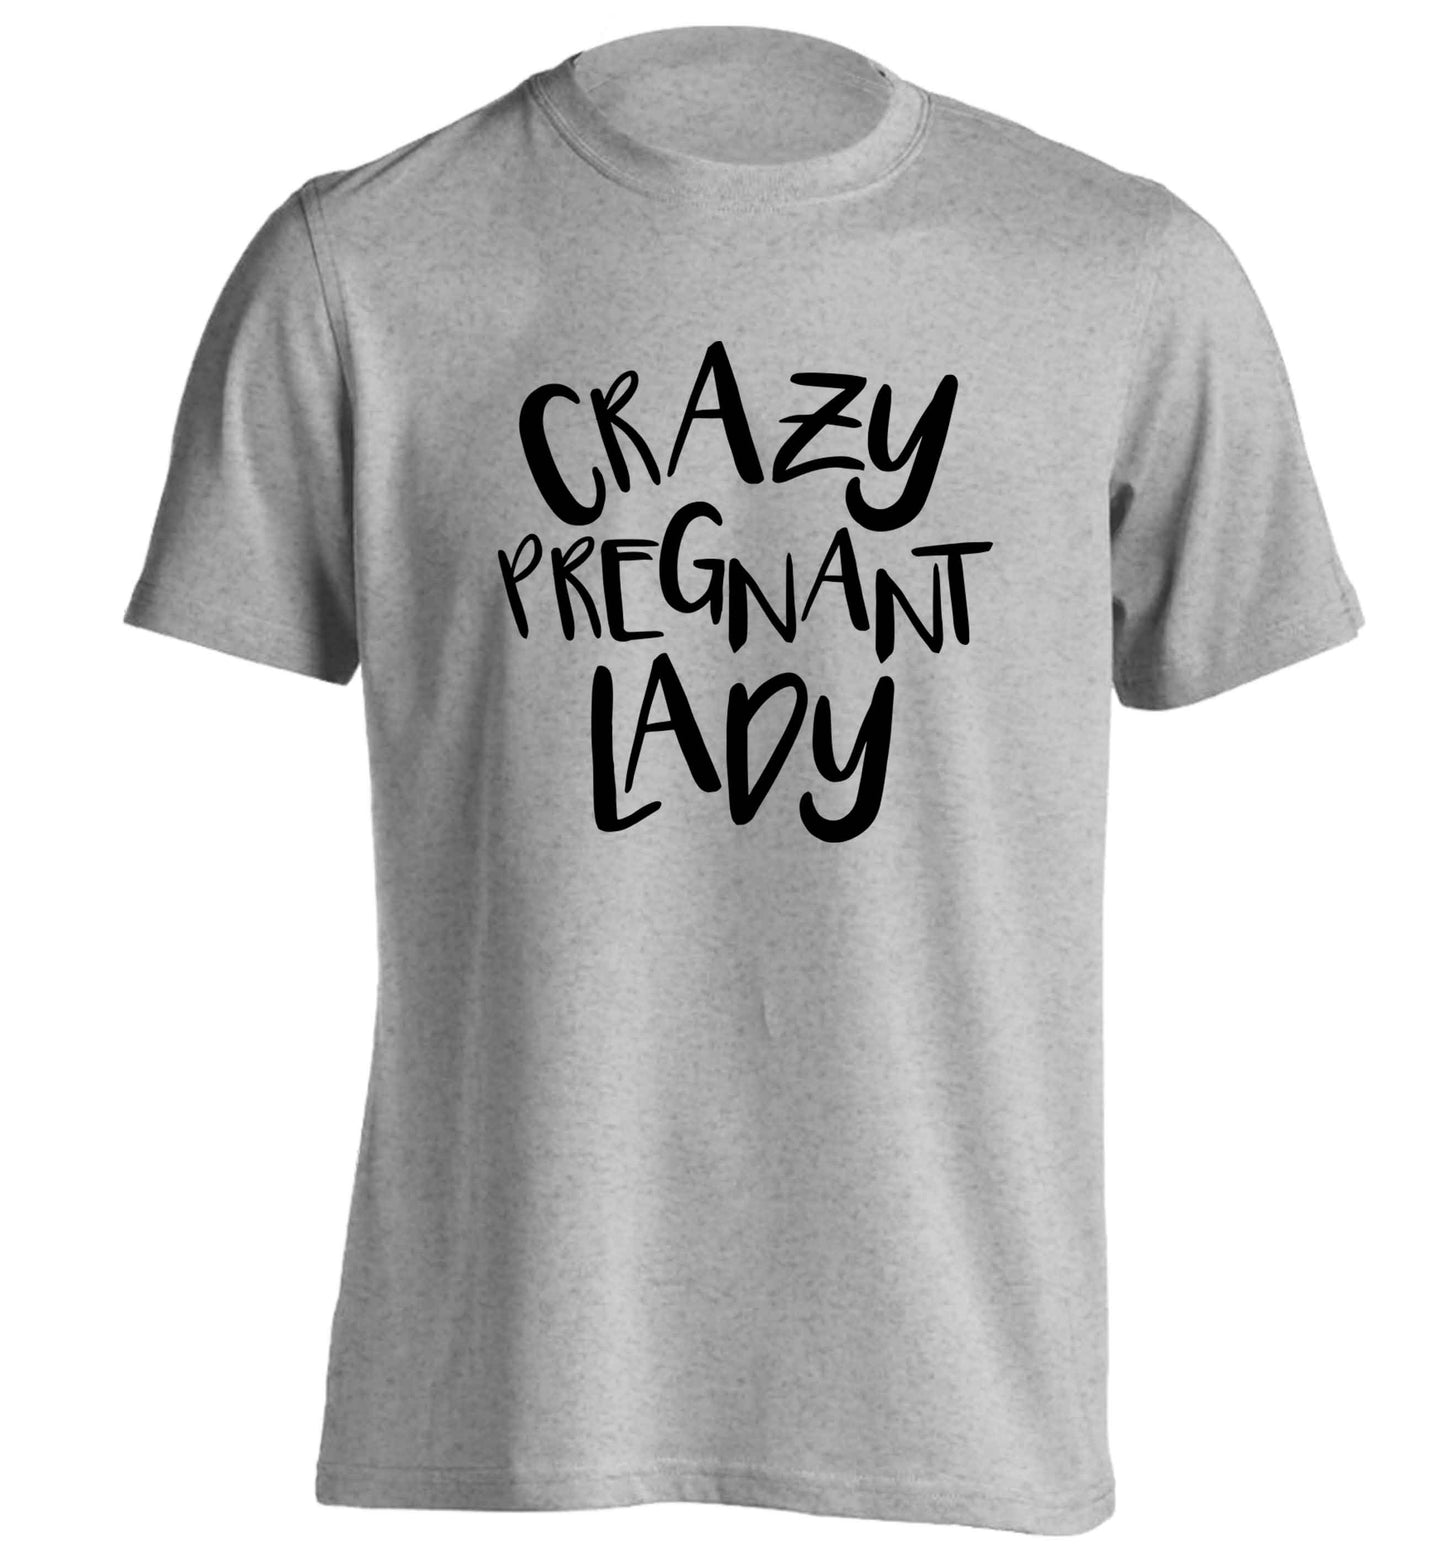 Crazy pregnant lady adults unisex grey Tshirt 2XL